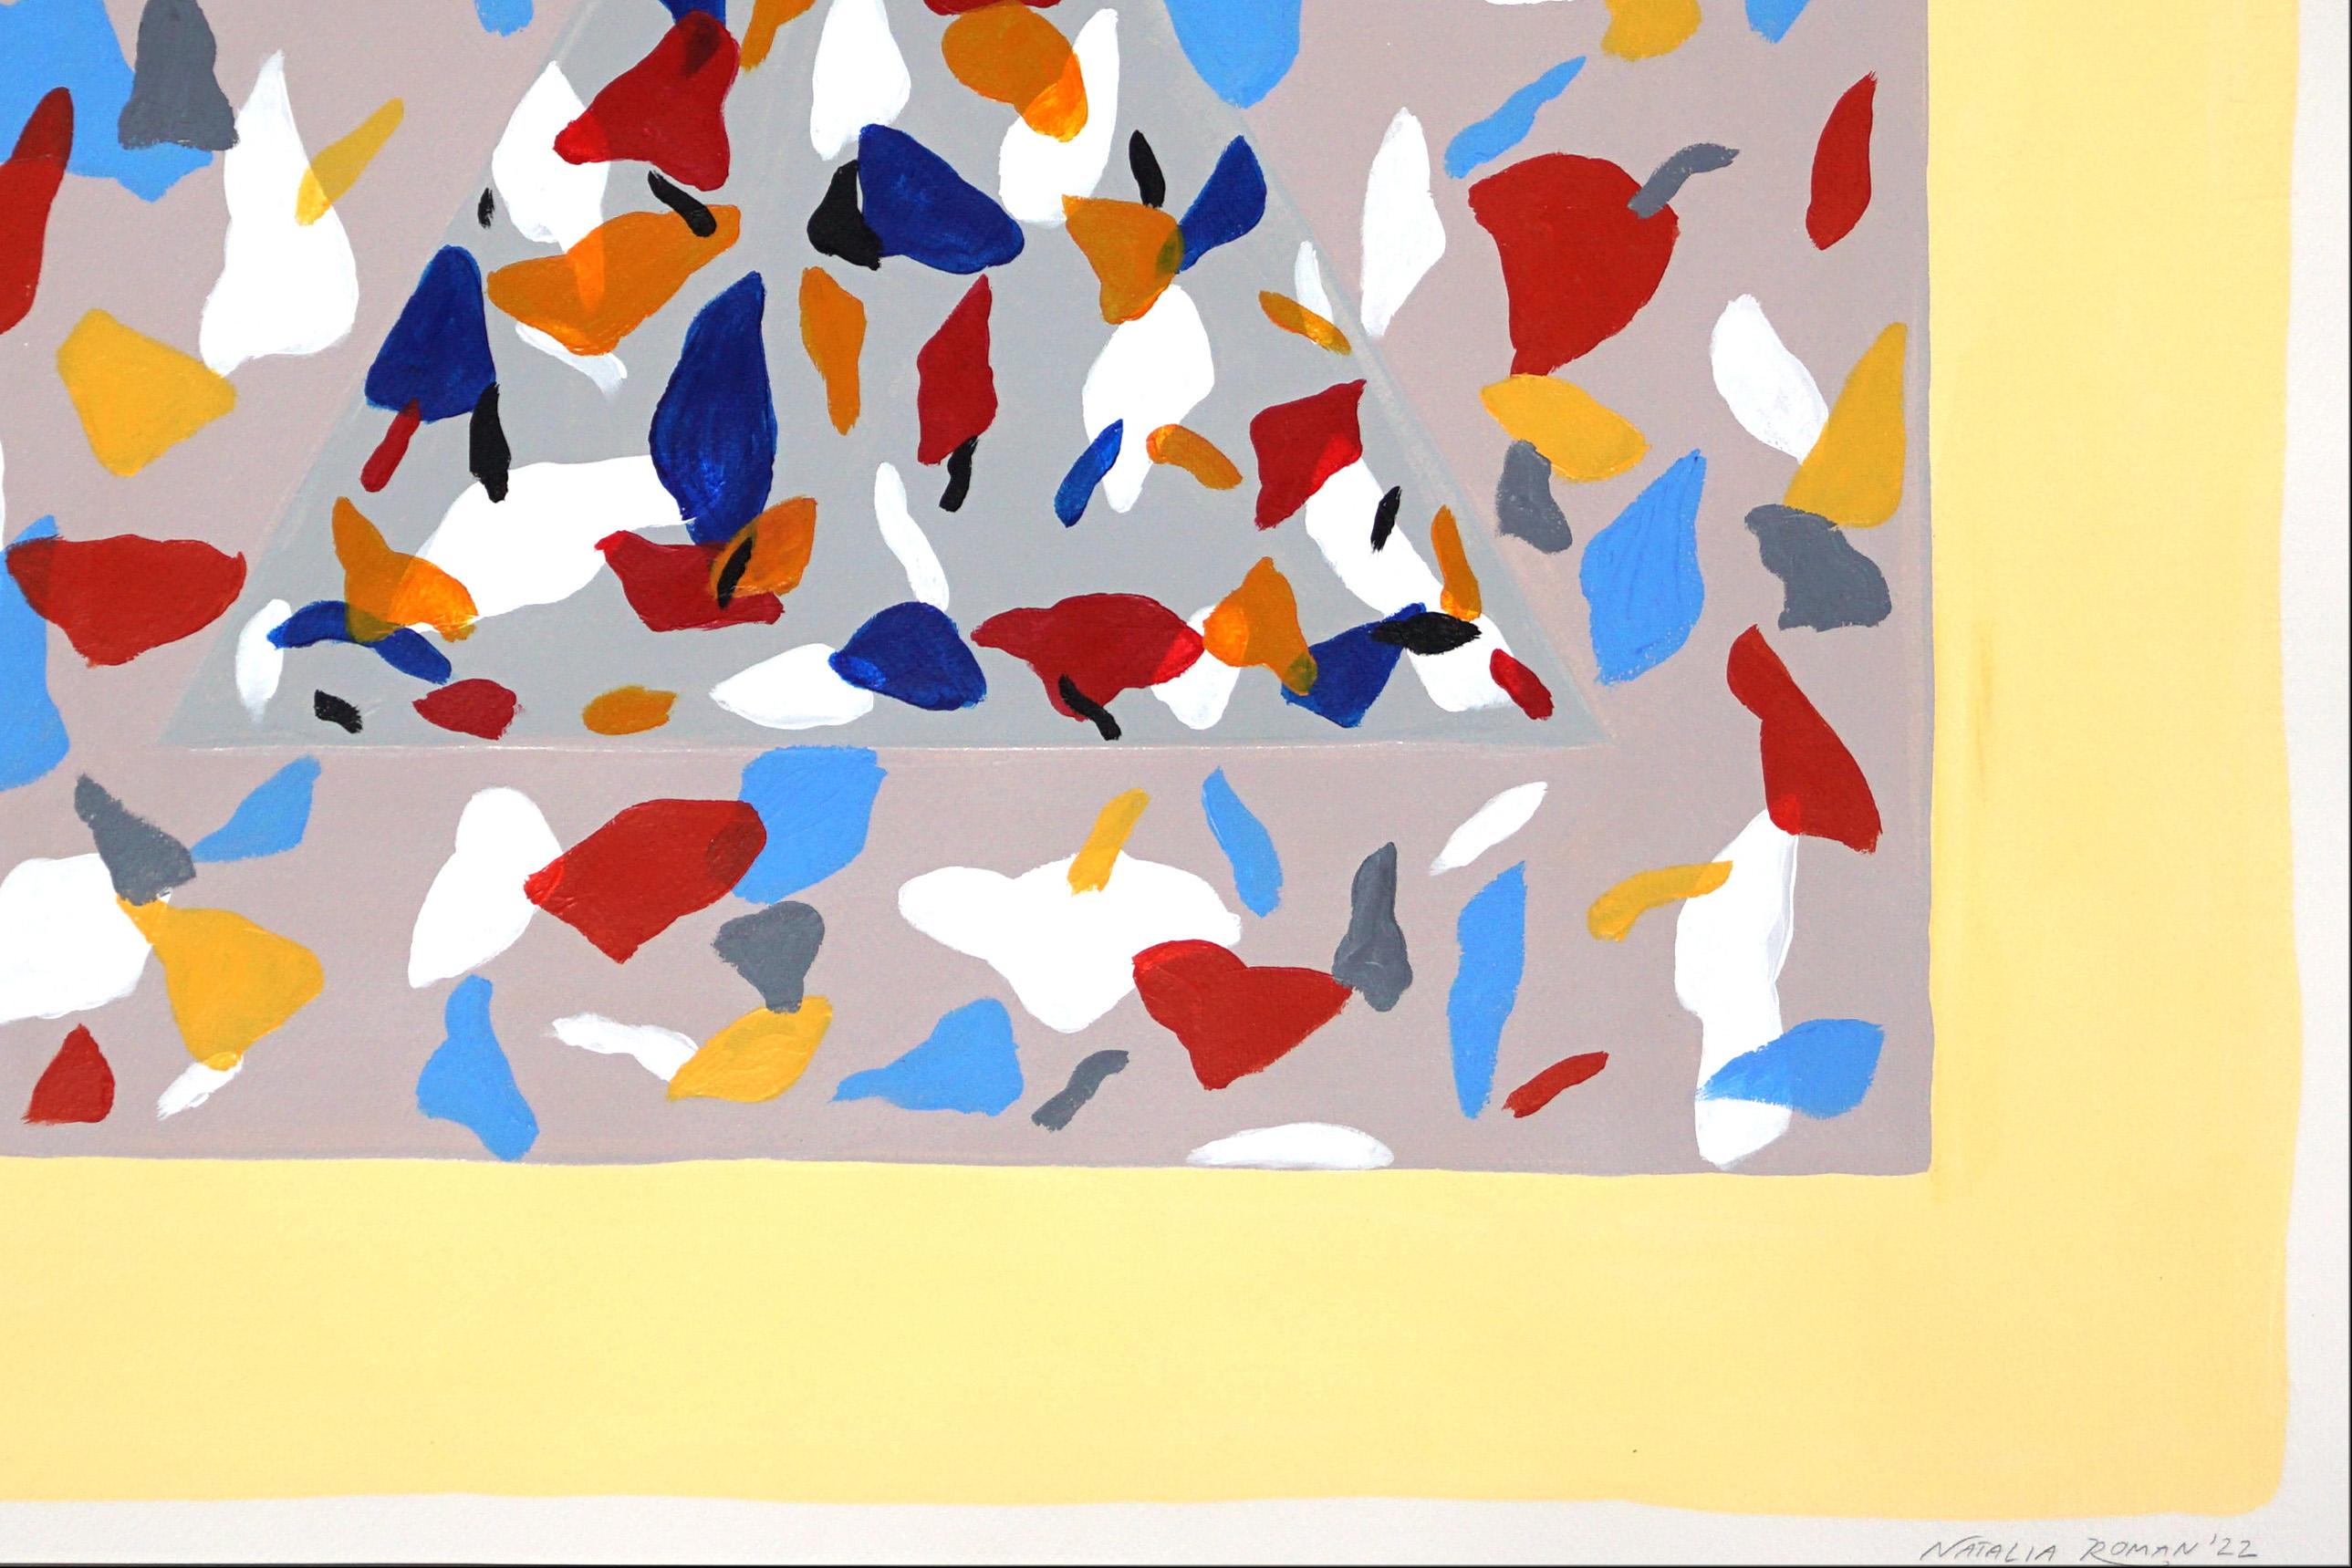 Shapes et couleurs cachées et primaires, motifs géométriques en terrazzo, fond brun clair - Géométrique abstrait Painting par Natalia Roman